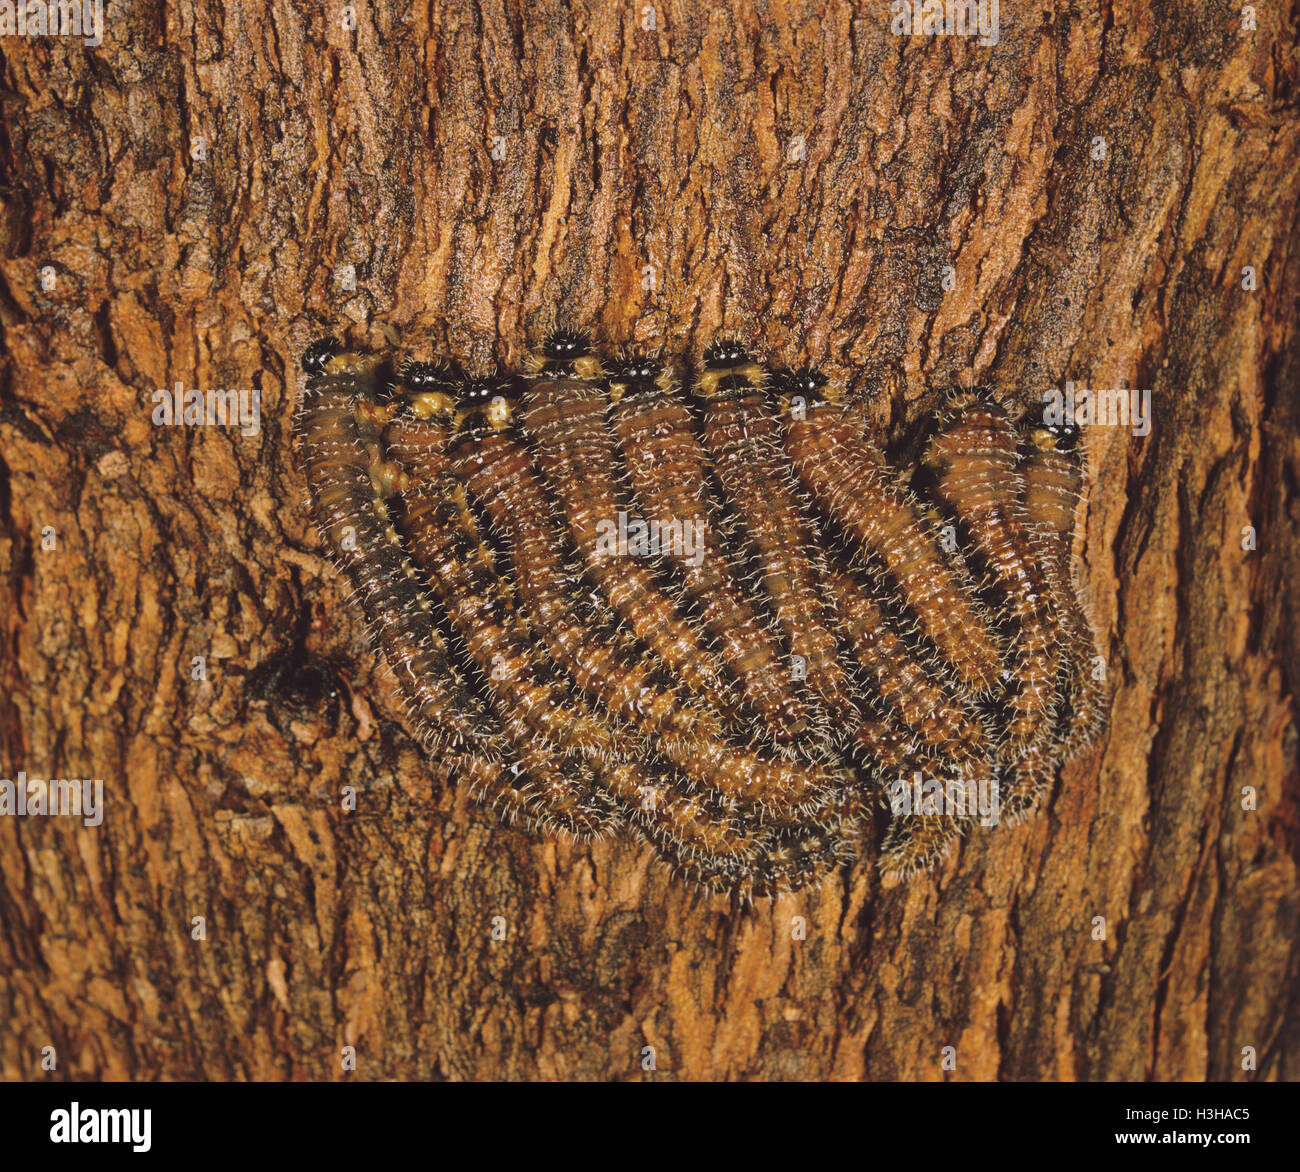 Steelblue sawfly (Perga affinis) Stock Photo